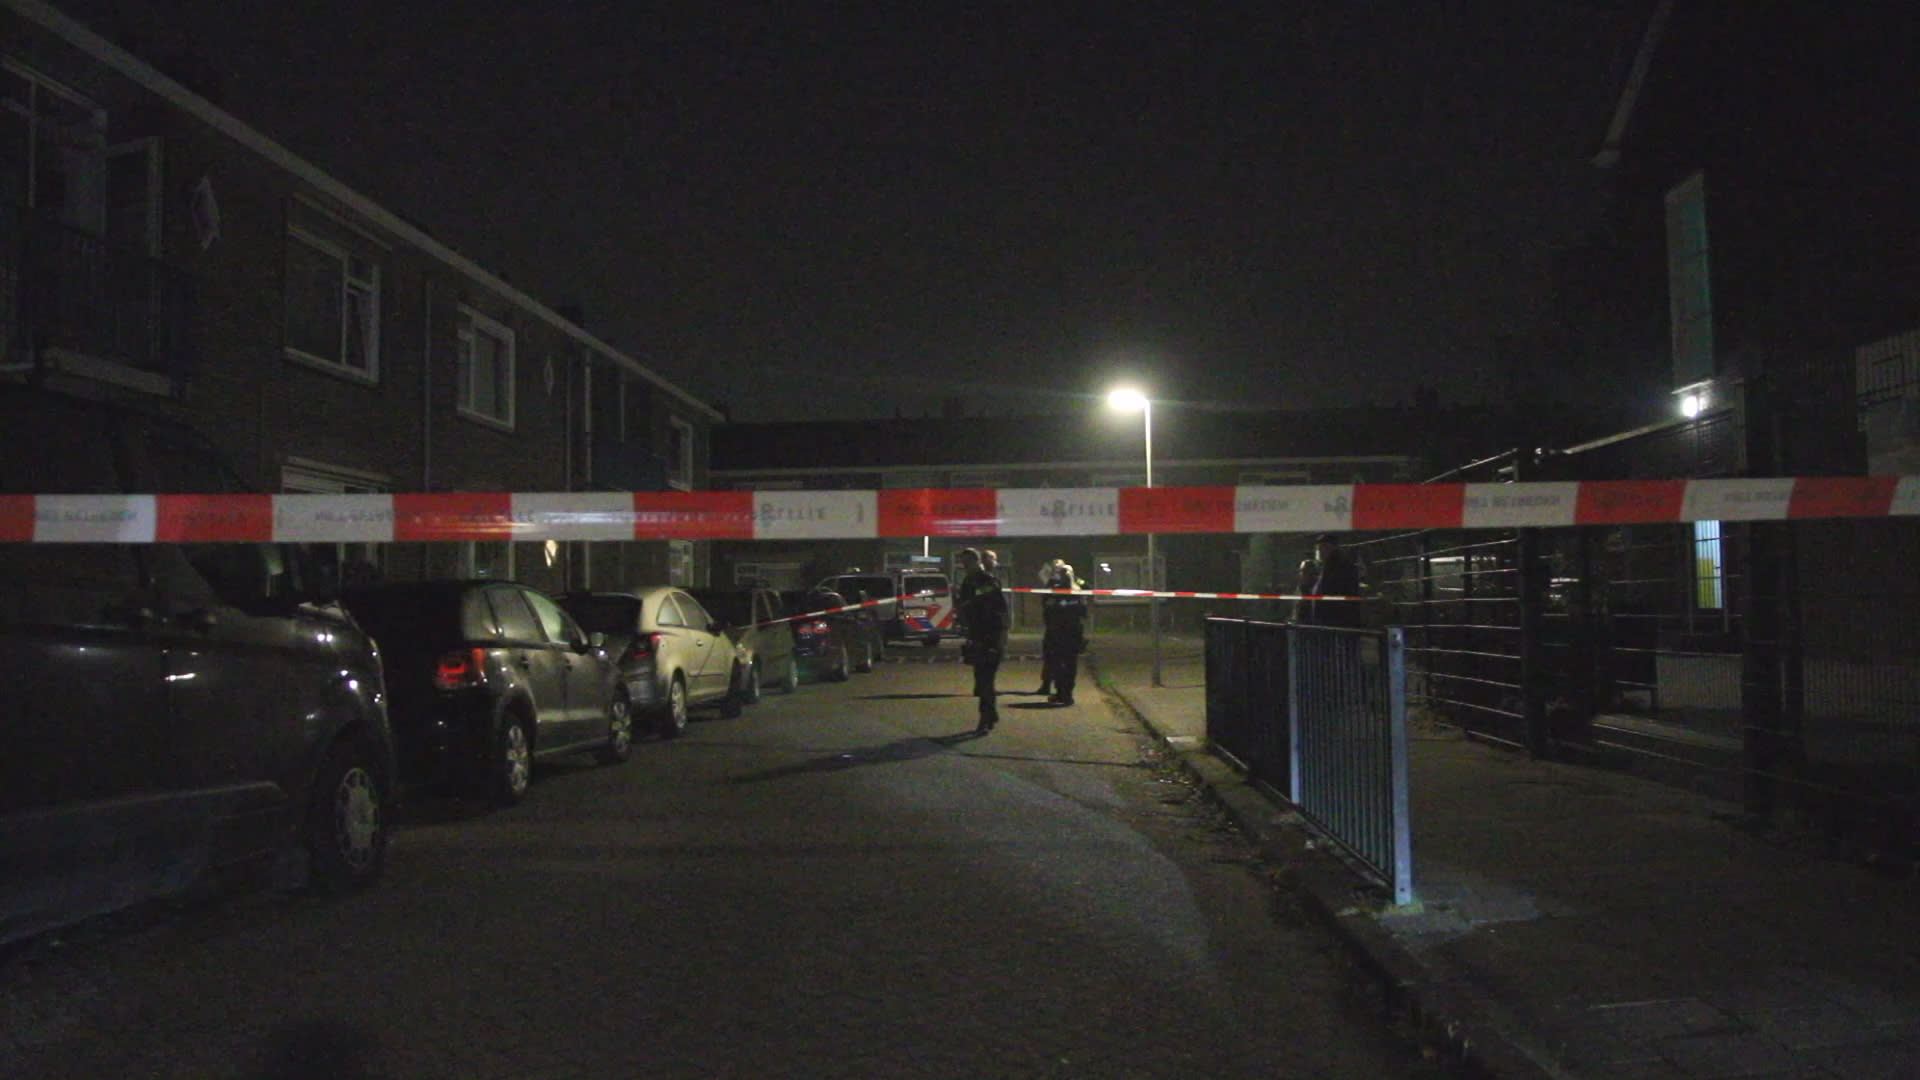 Ontploffing bij woning in Capelle aan den IJssel, straat afgezet voor onderzoek